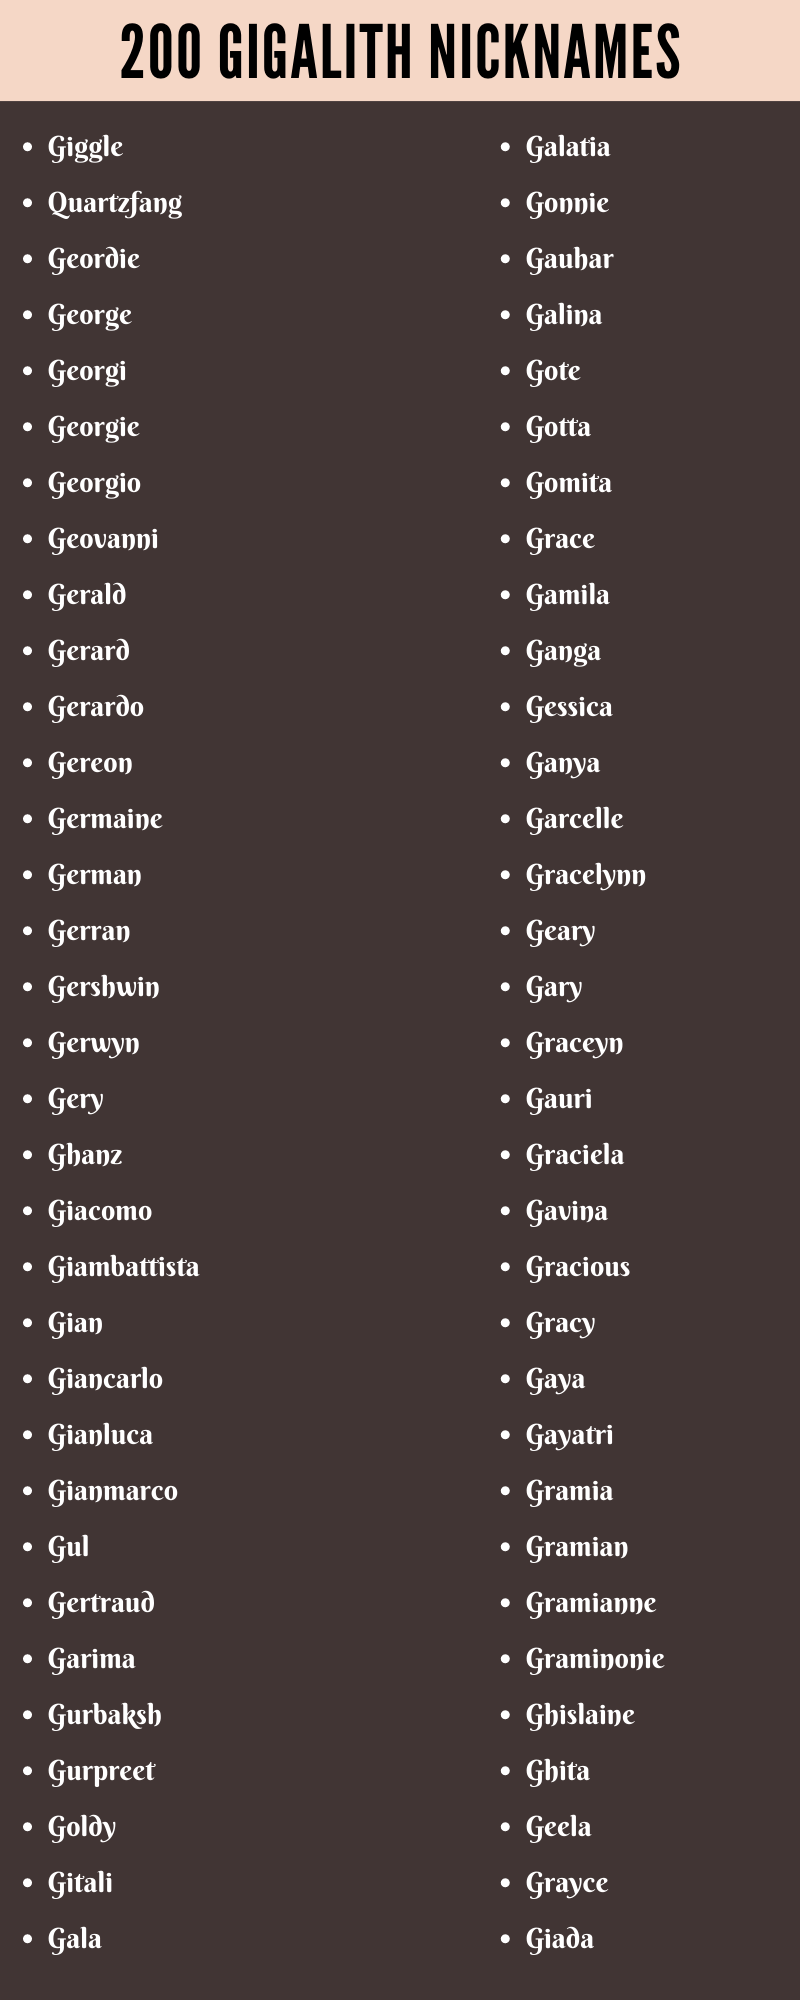 Gigalith Nicknames